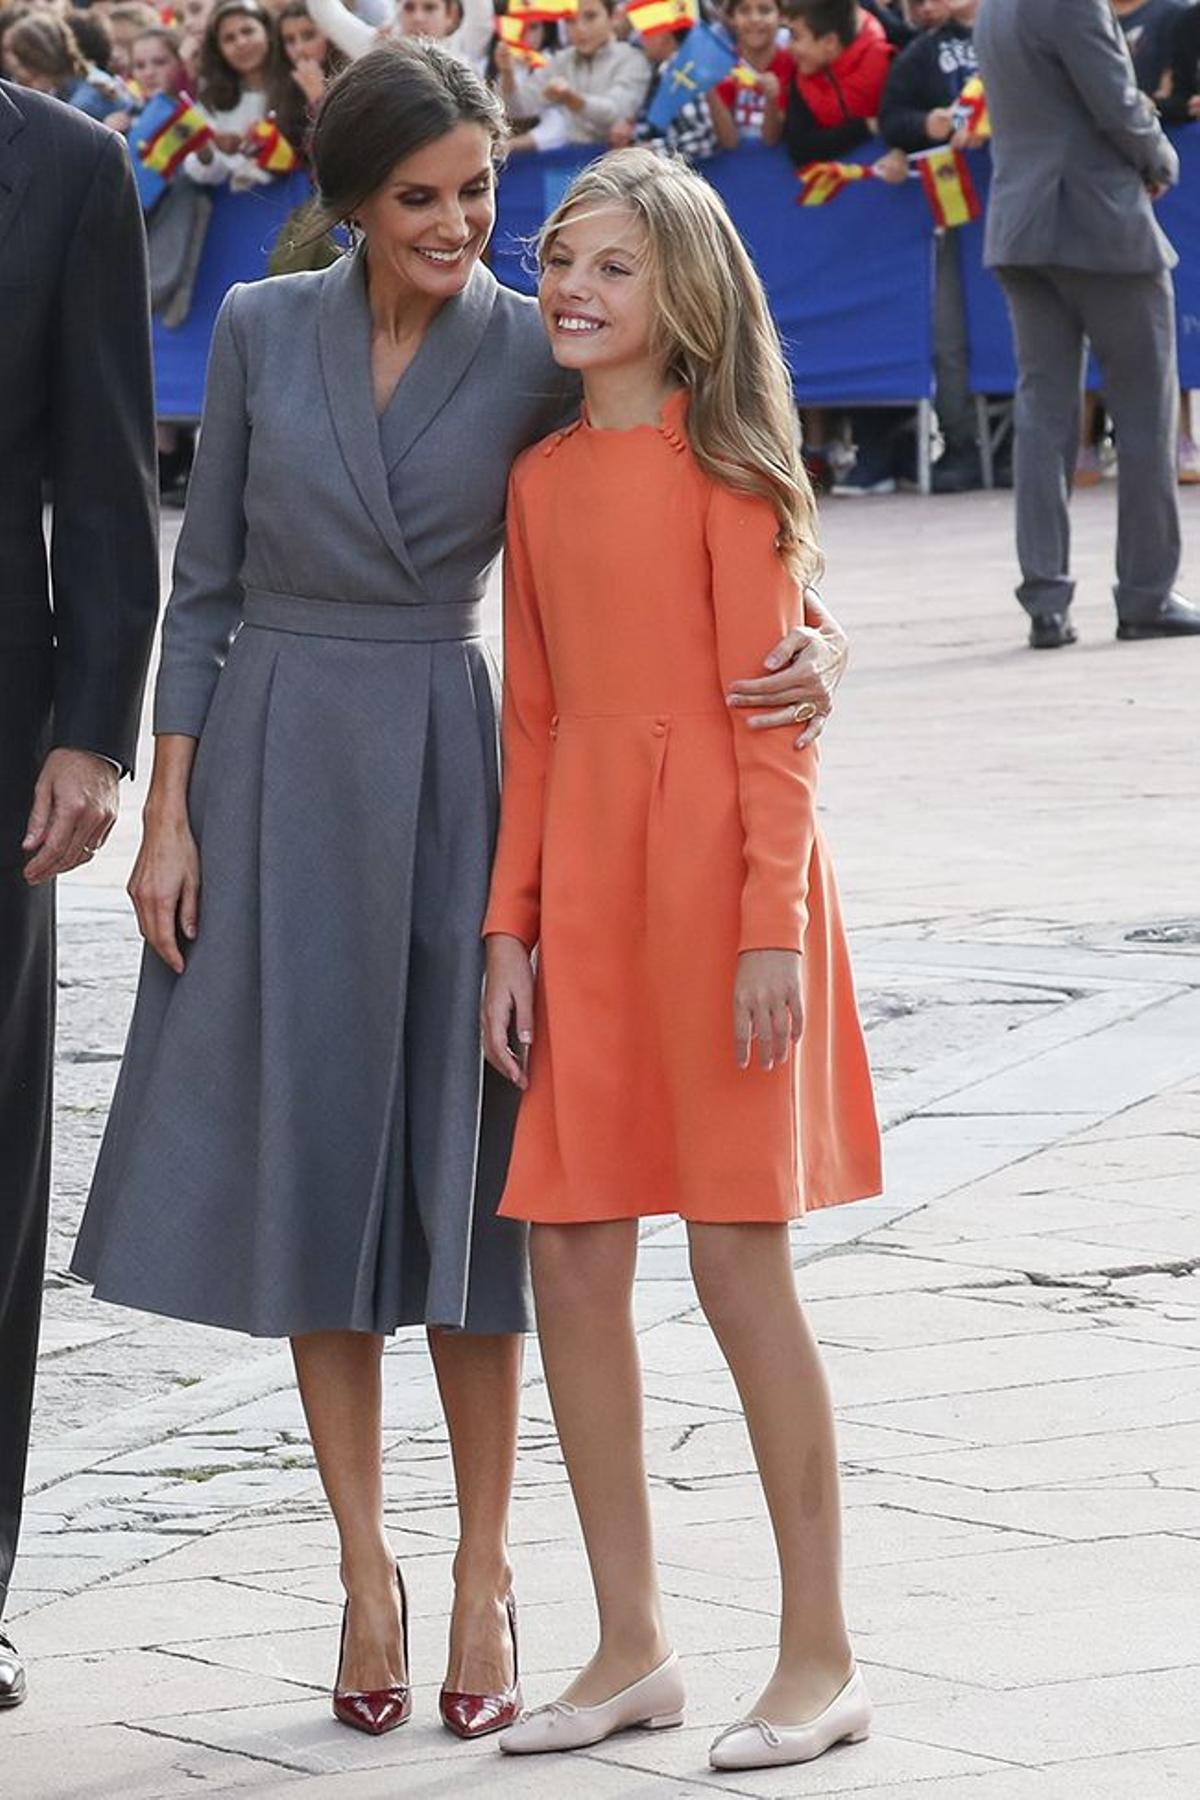 La reina Letiza abraza a su hija, la infanta Sofía